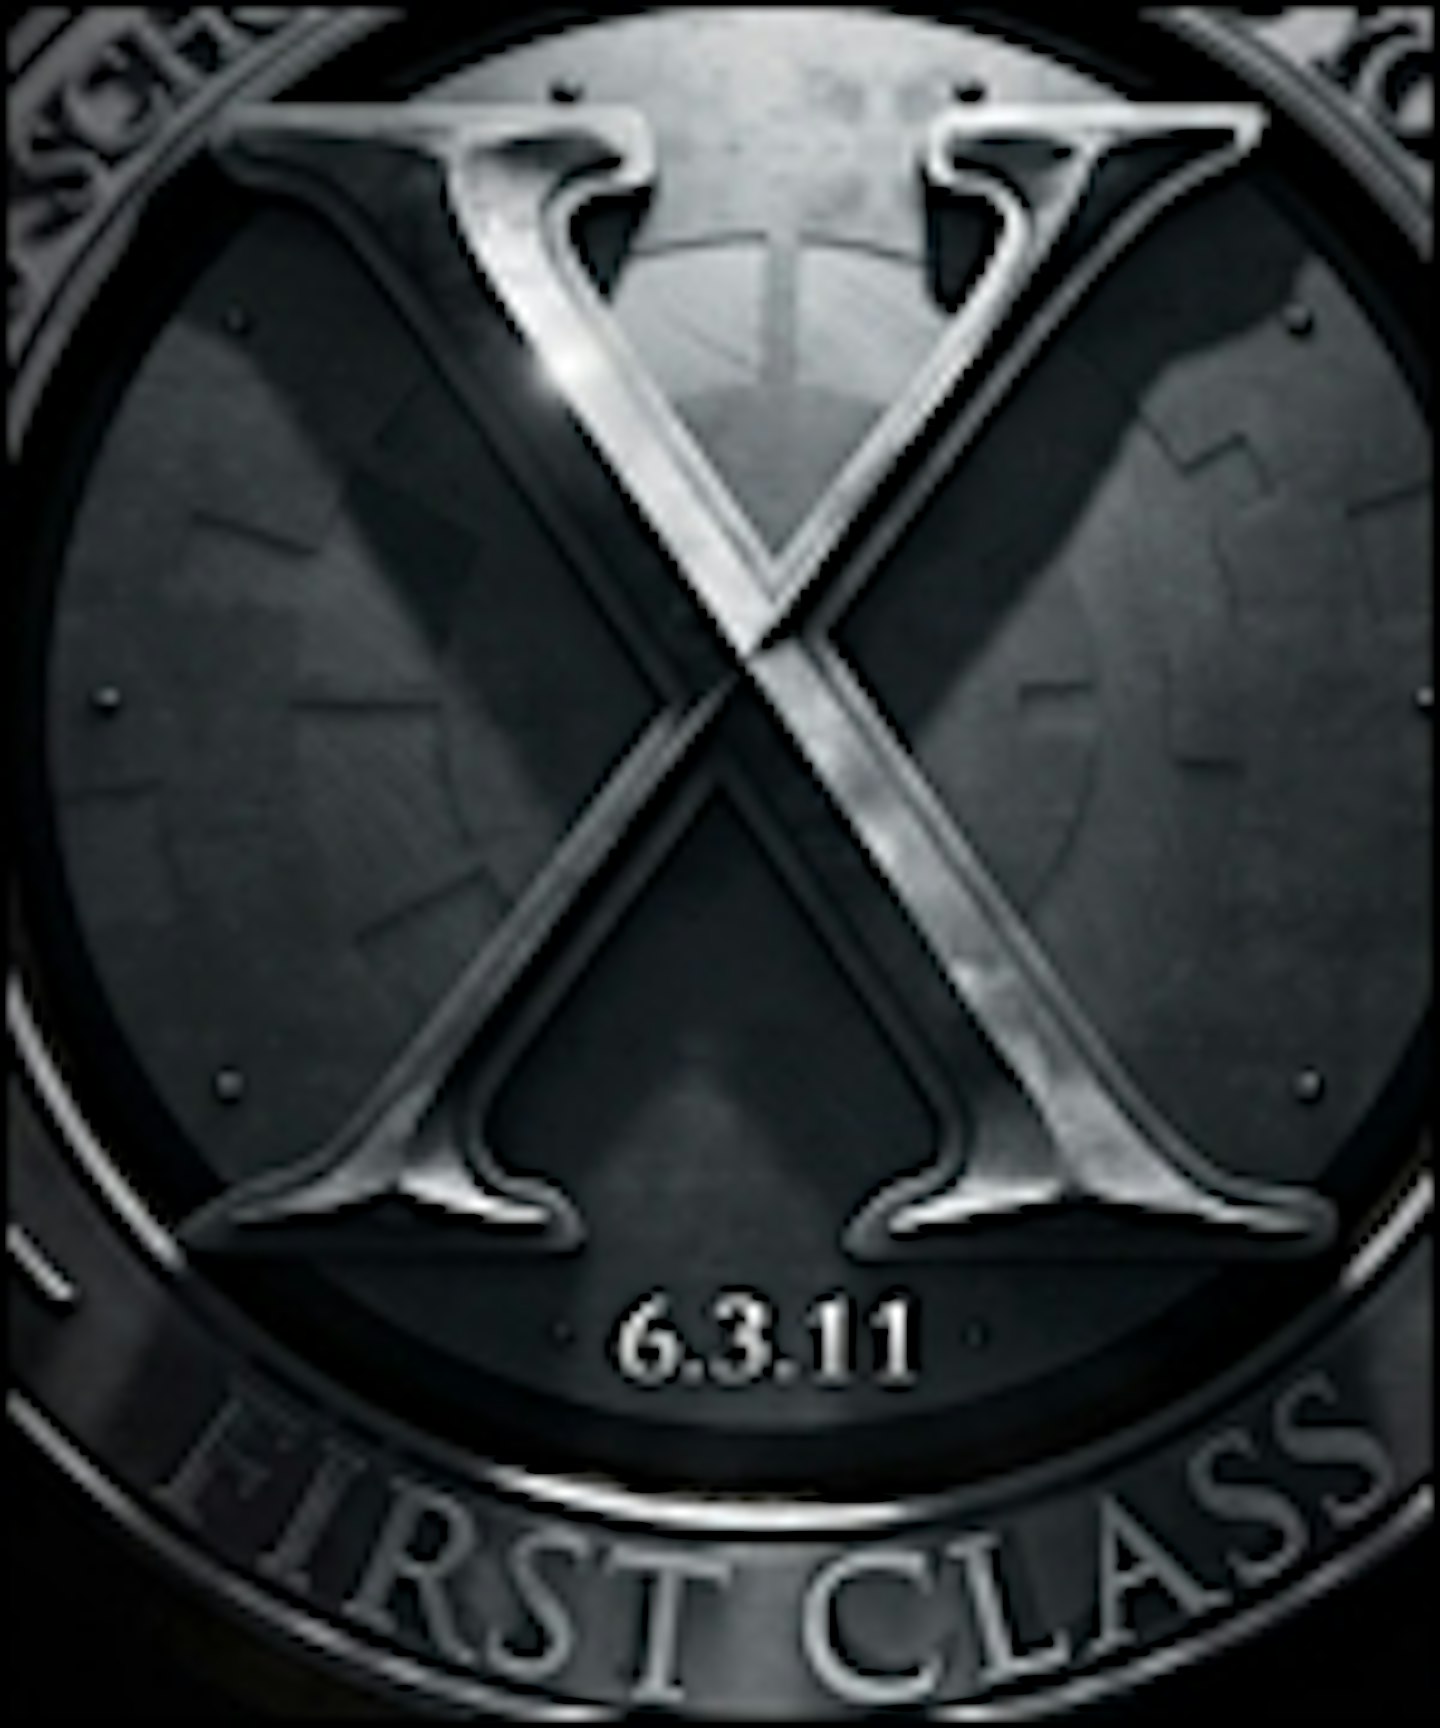 New X-Men: First Class Image Online